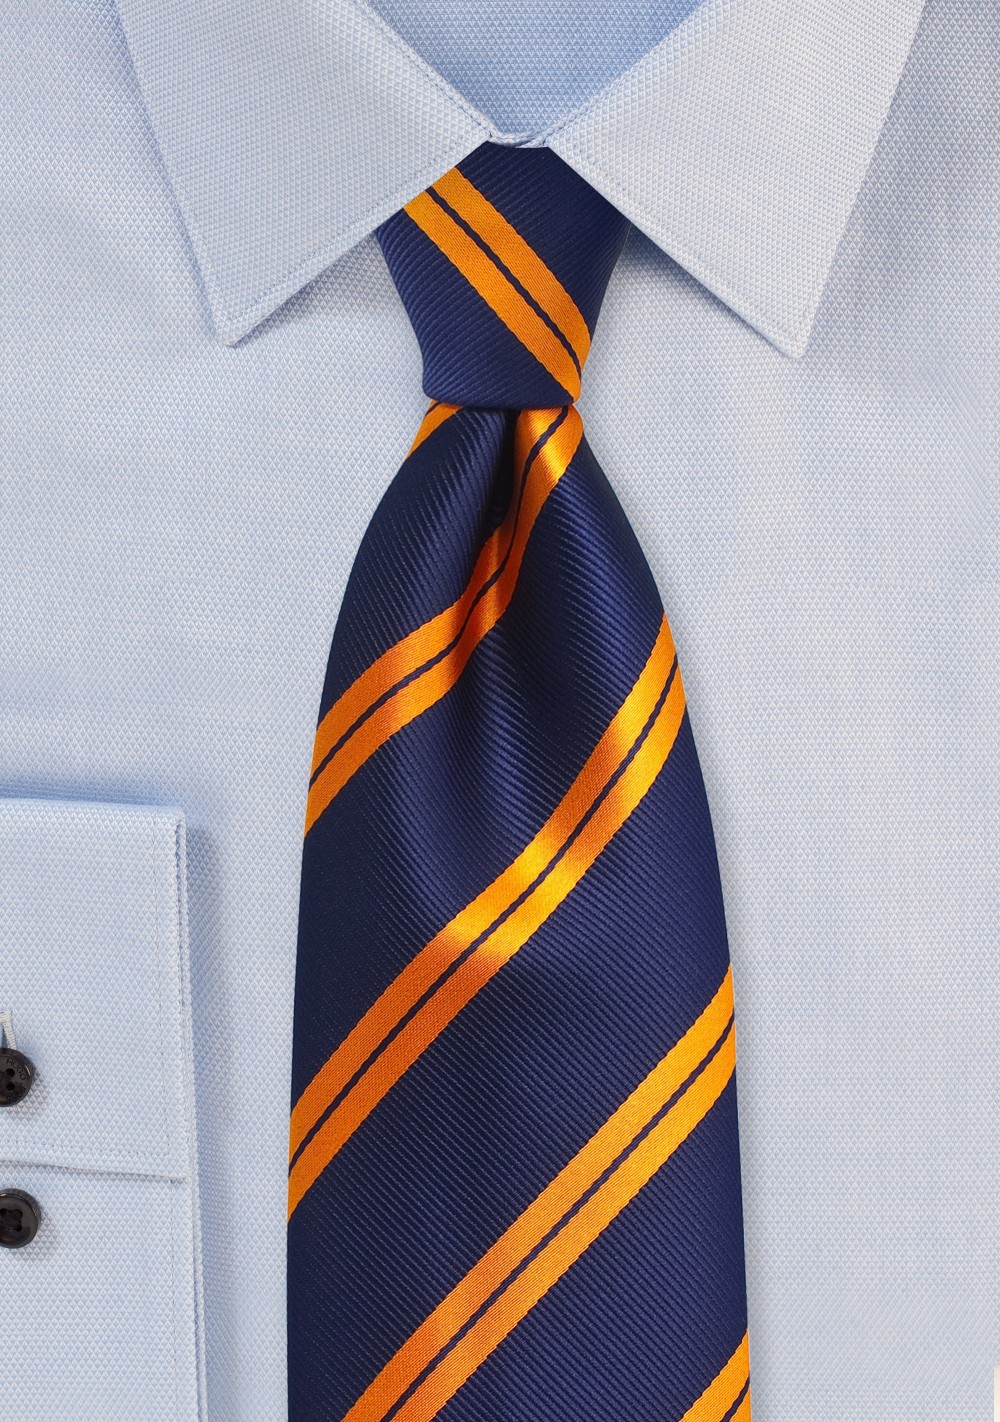 Modern Striped Tie in Kids Size